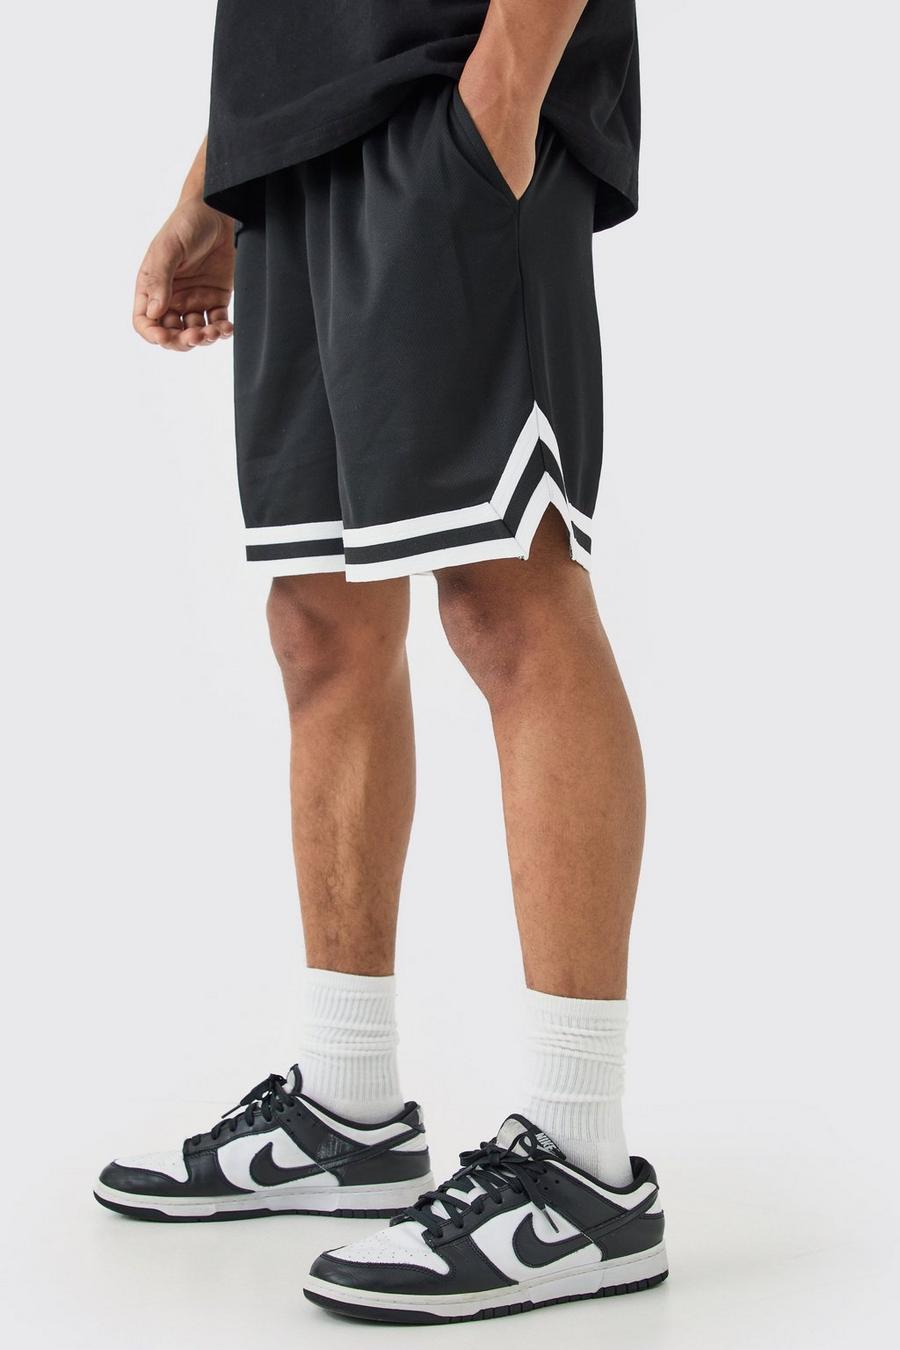 Pantalón corto holgado de malla estilo baloncesto, Black